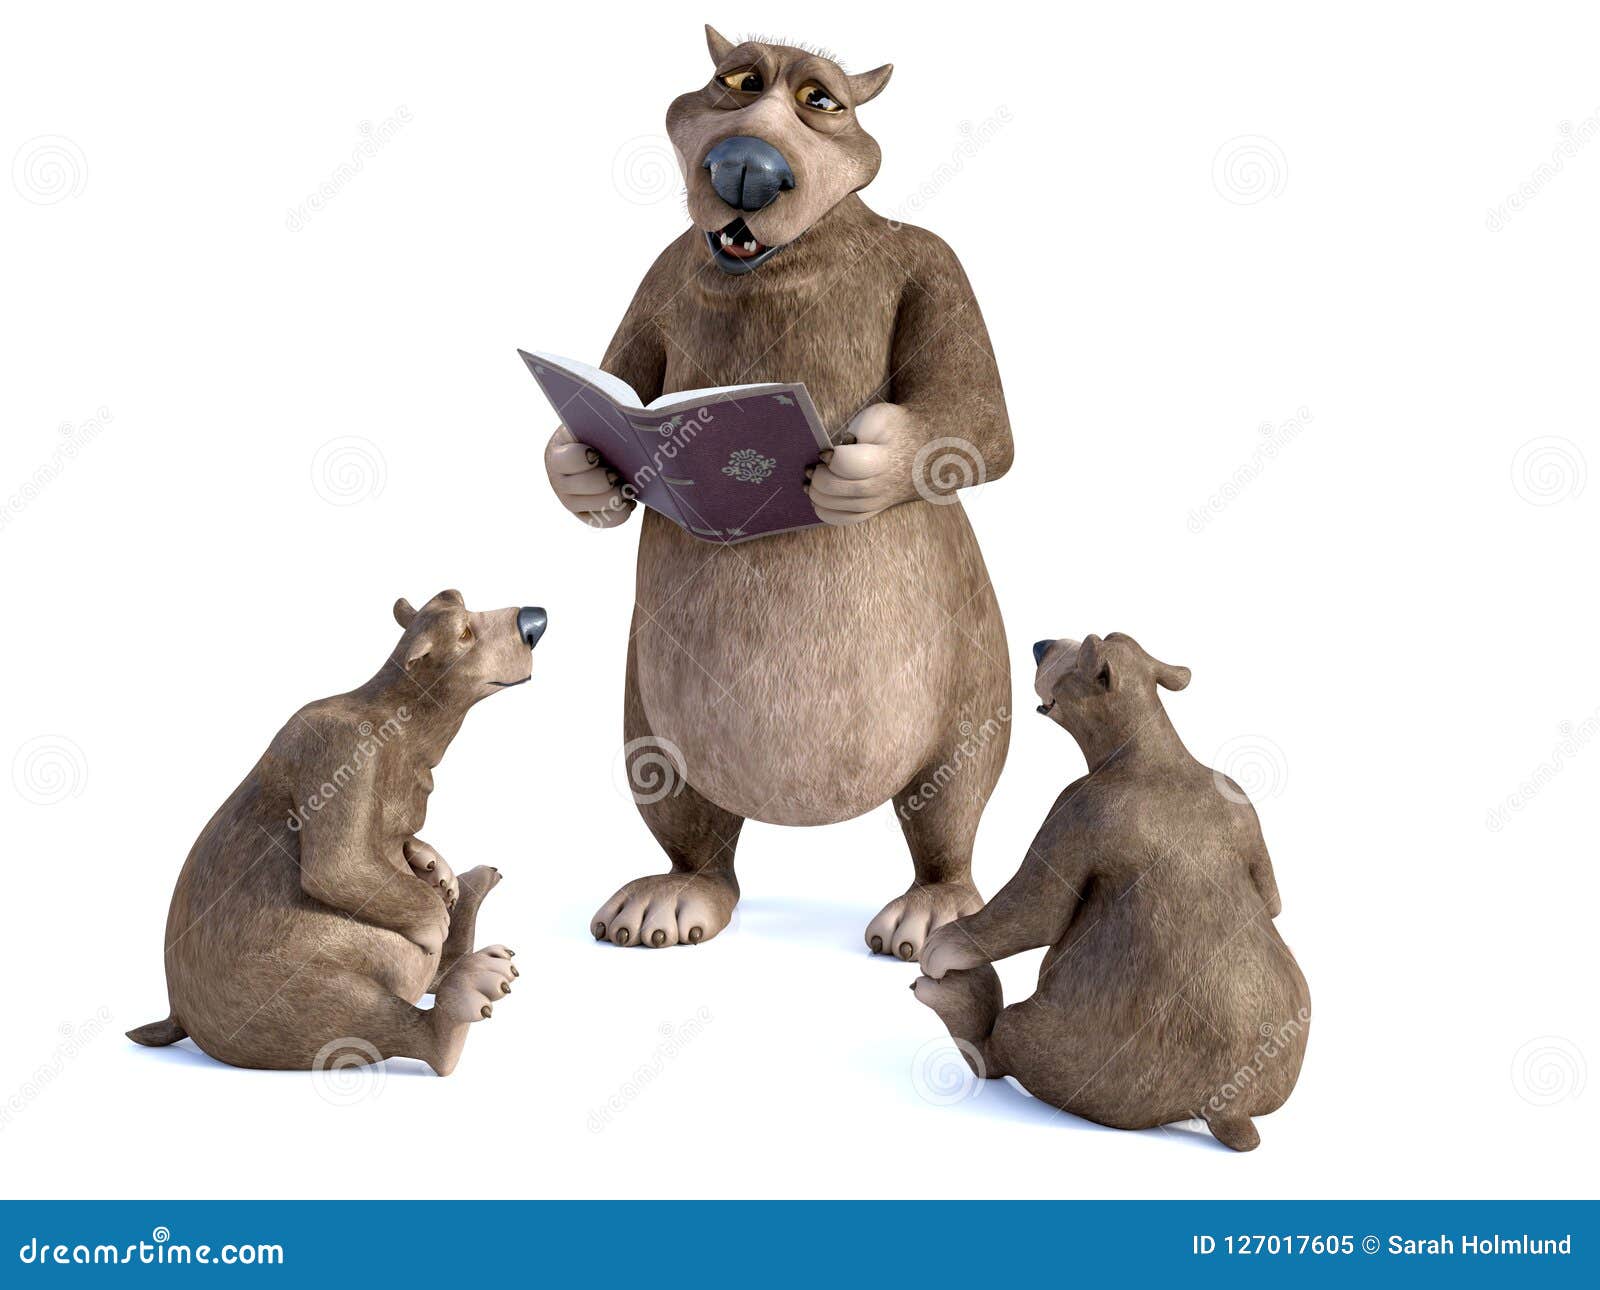 3d rendering of cartoon bears having a storytime.